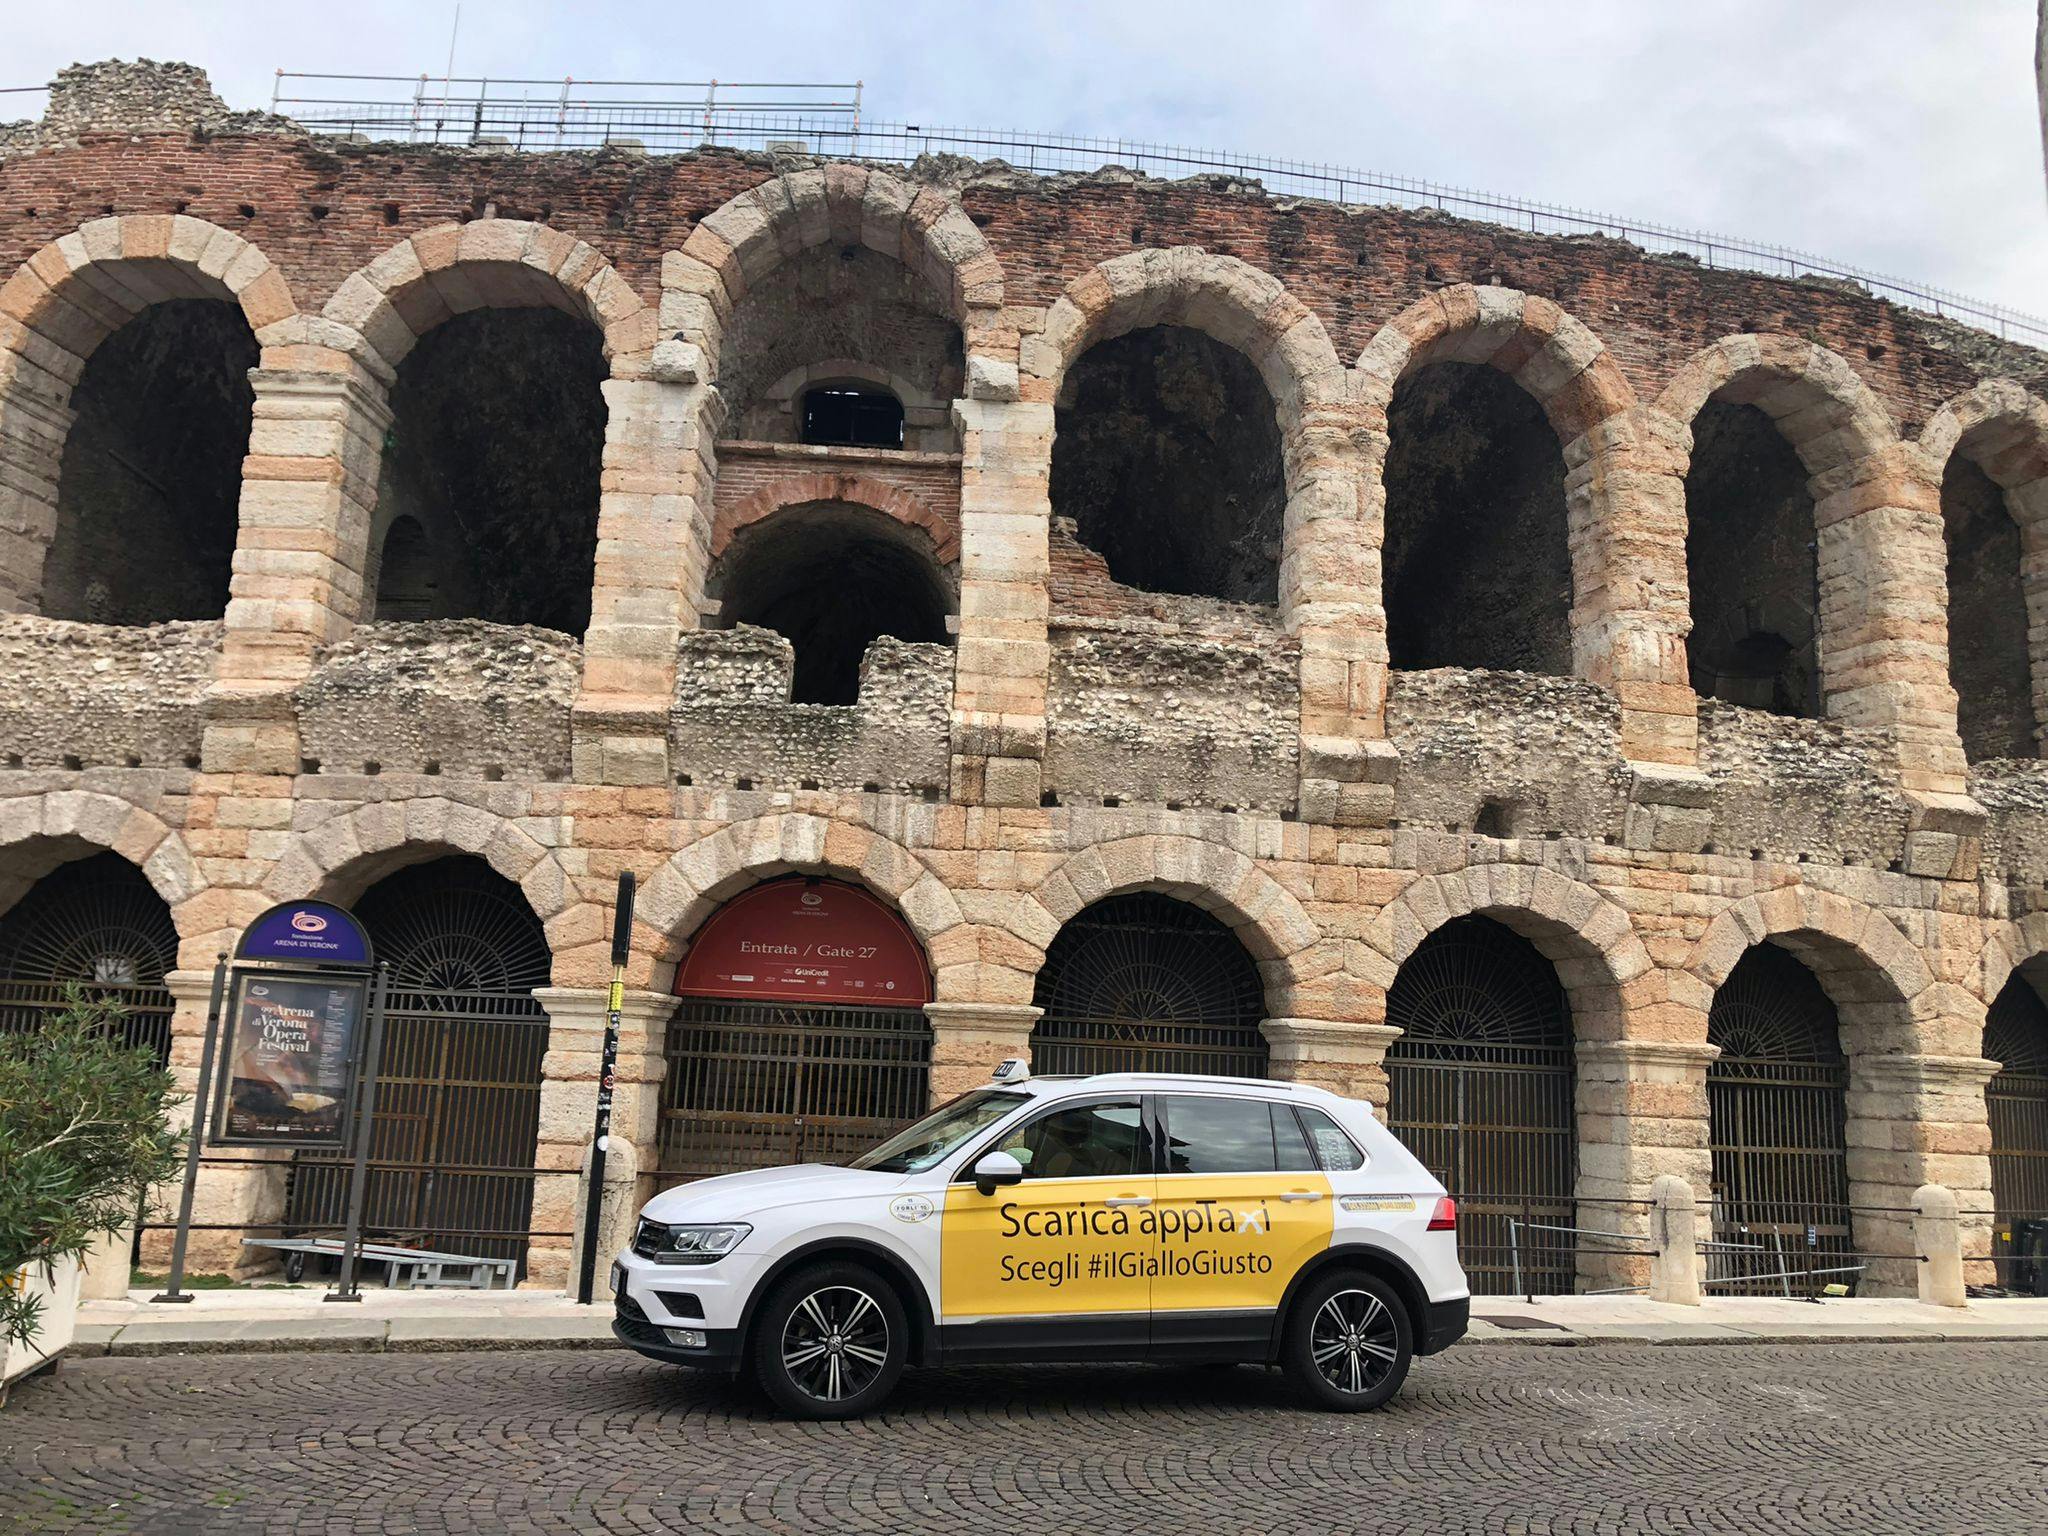 App taxi in Verona arena